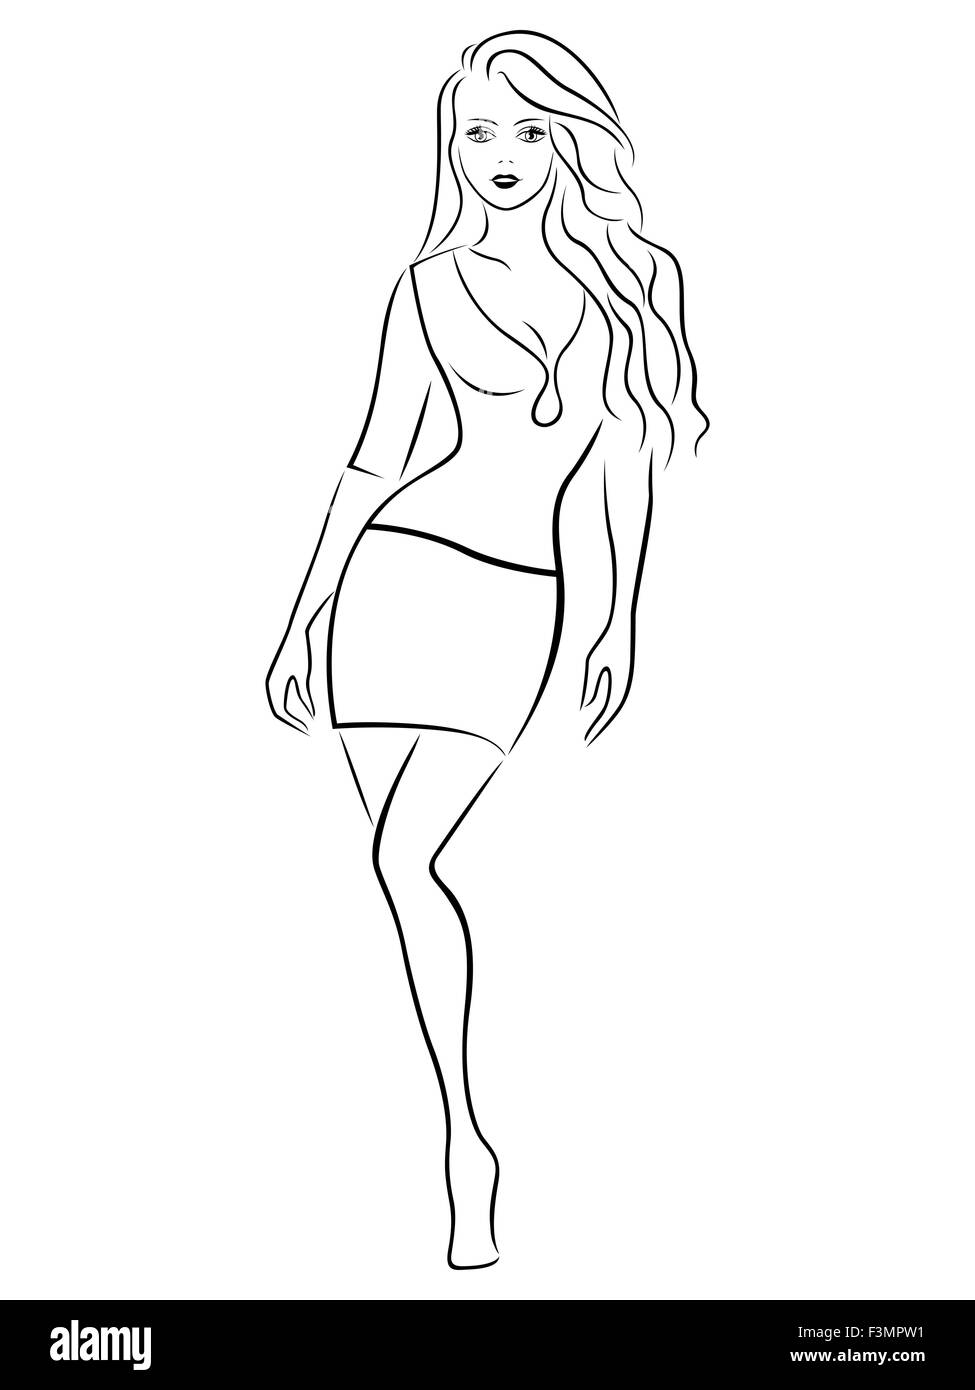 Belle fille gracieuse dans une jupe courte, noir sur fond blanc dessin  illustration vectorielle Image Vectorielle Stock - Alamy